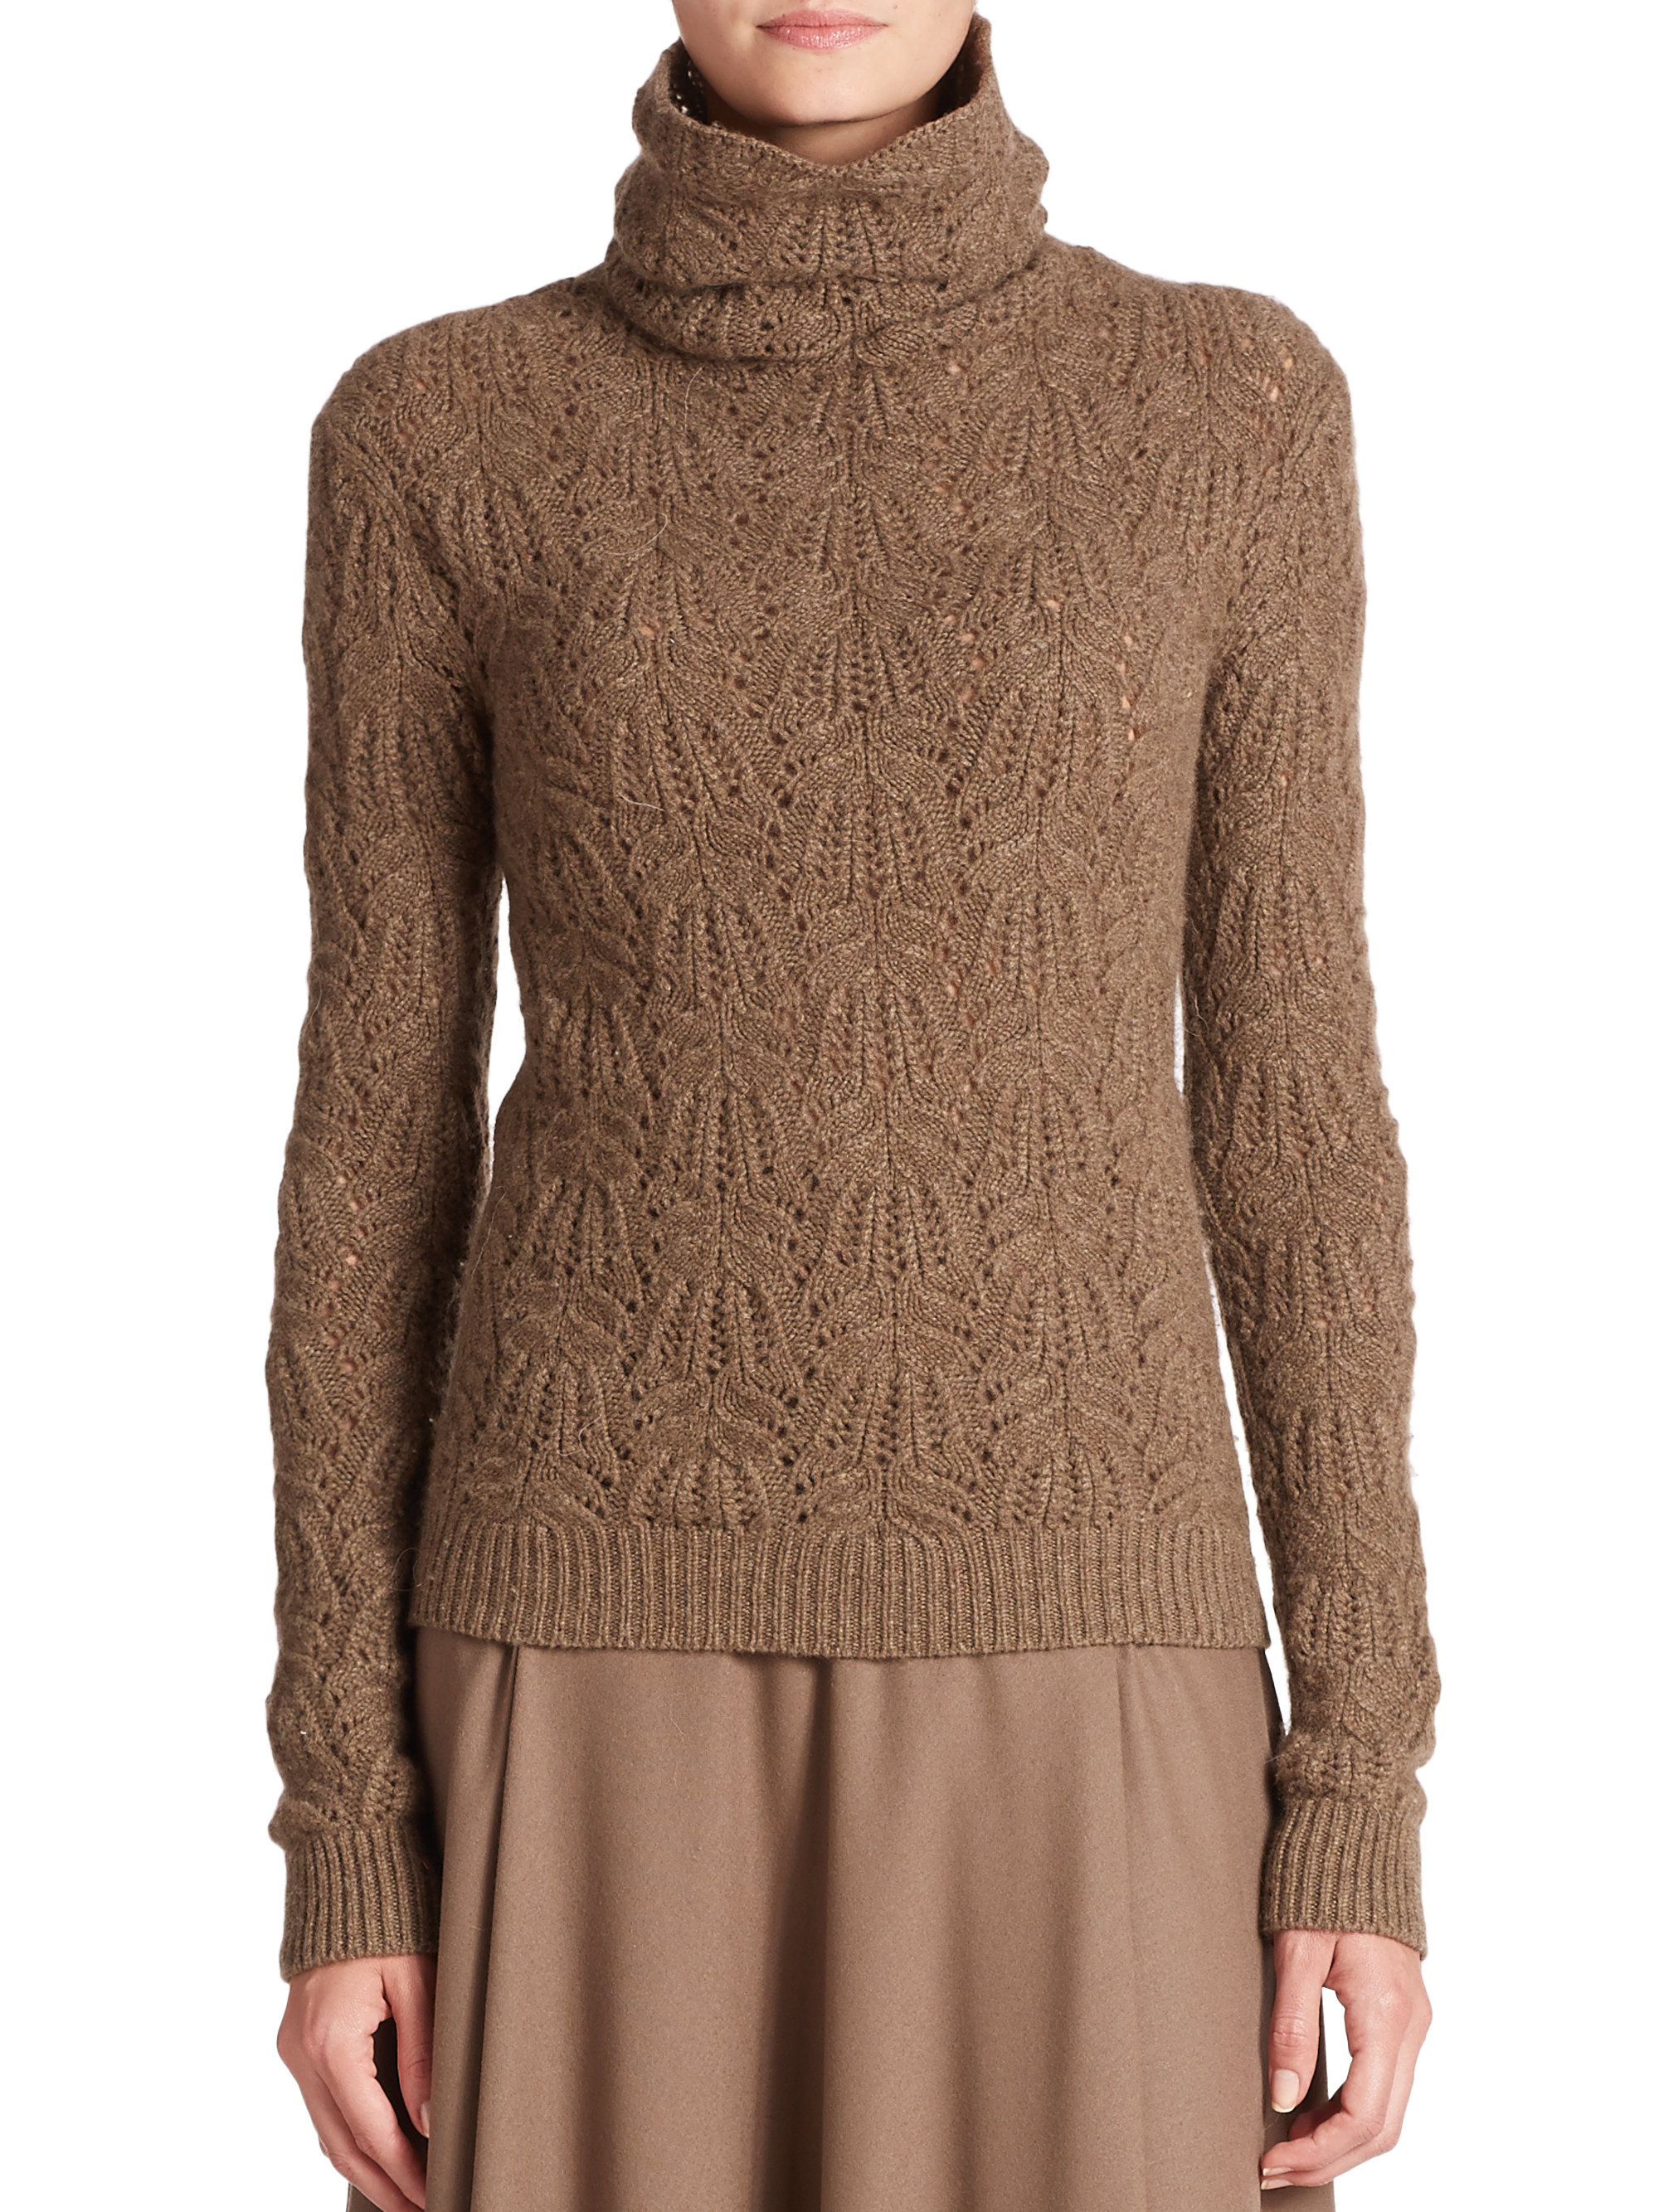 Ralph lauren Cashmere Crochet Turtleneck Sweater in Brown | Lyst